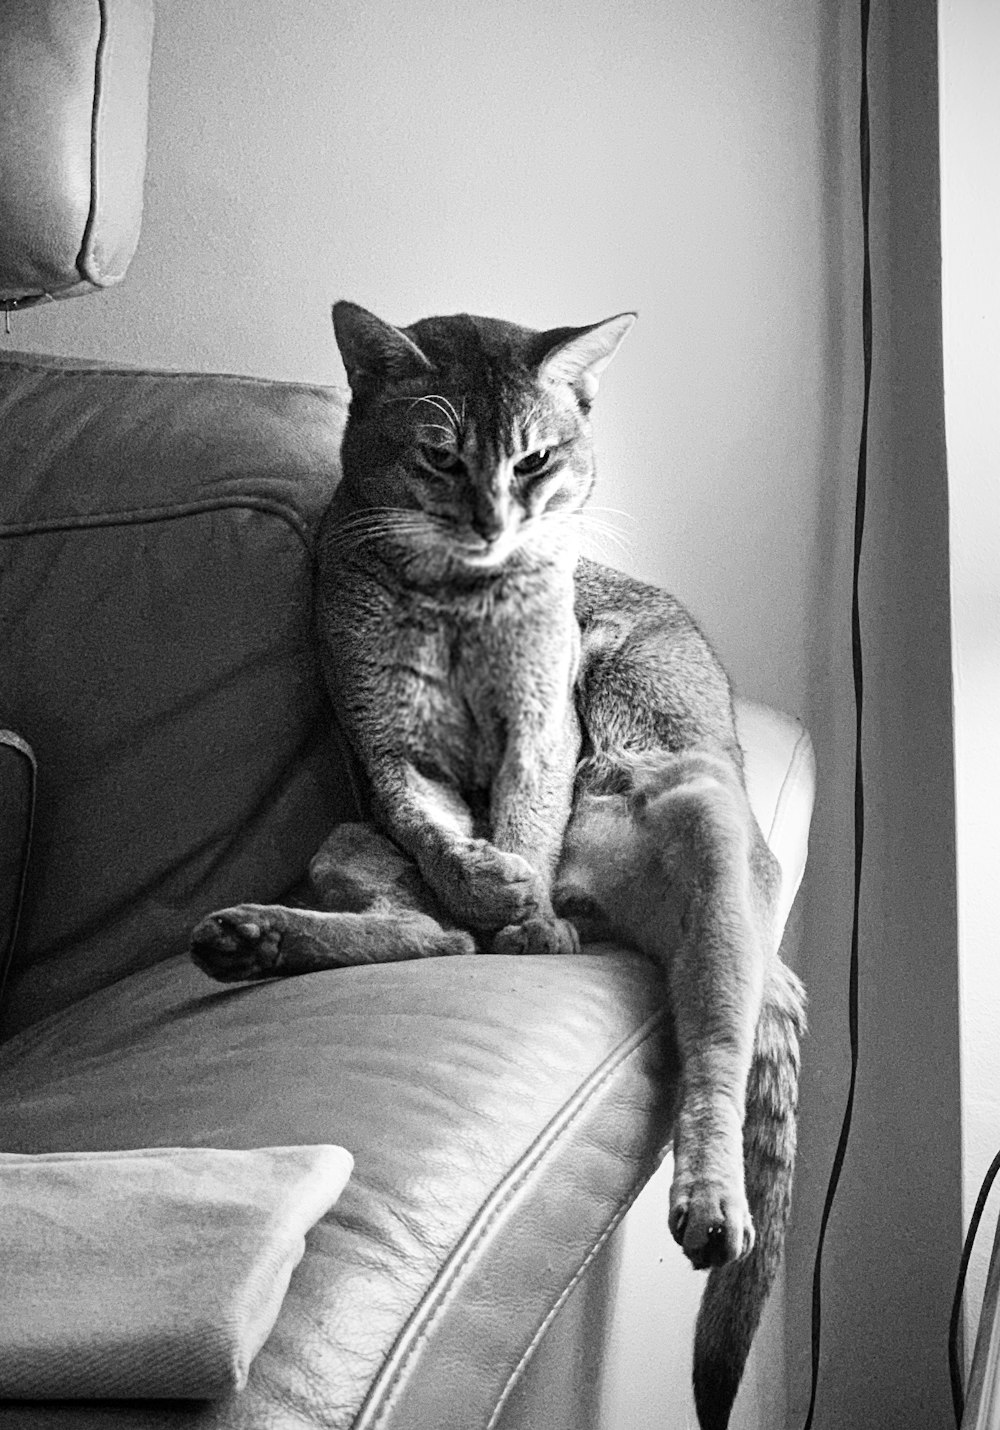 fotografia em tons de cinza do gato tabby no sofá